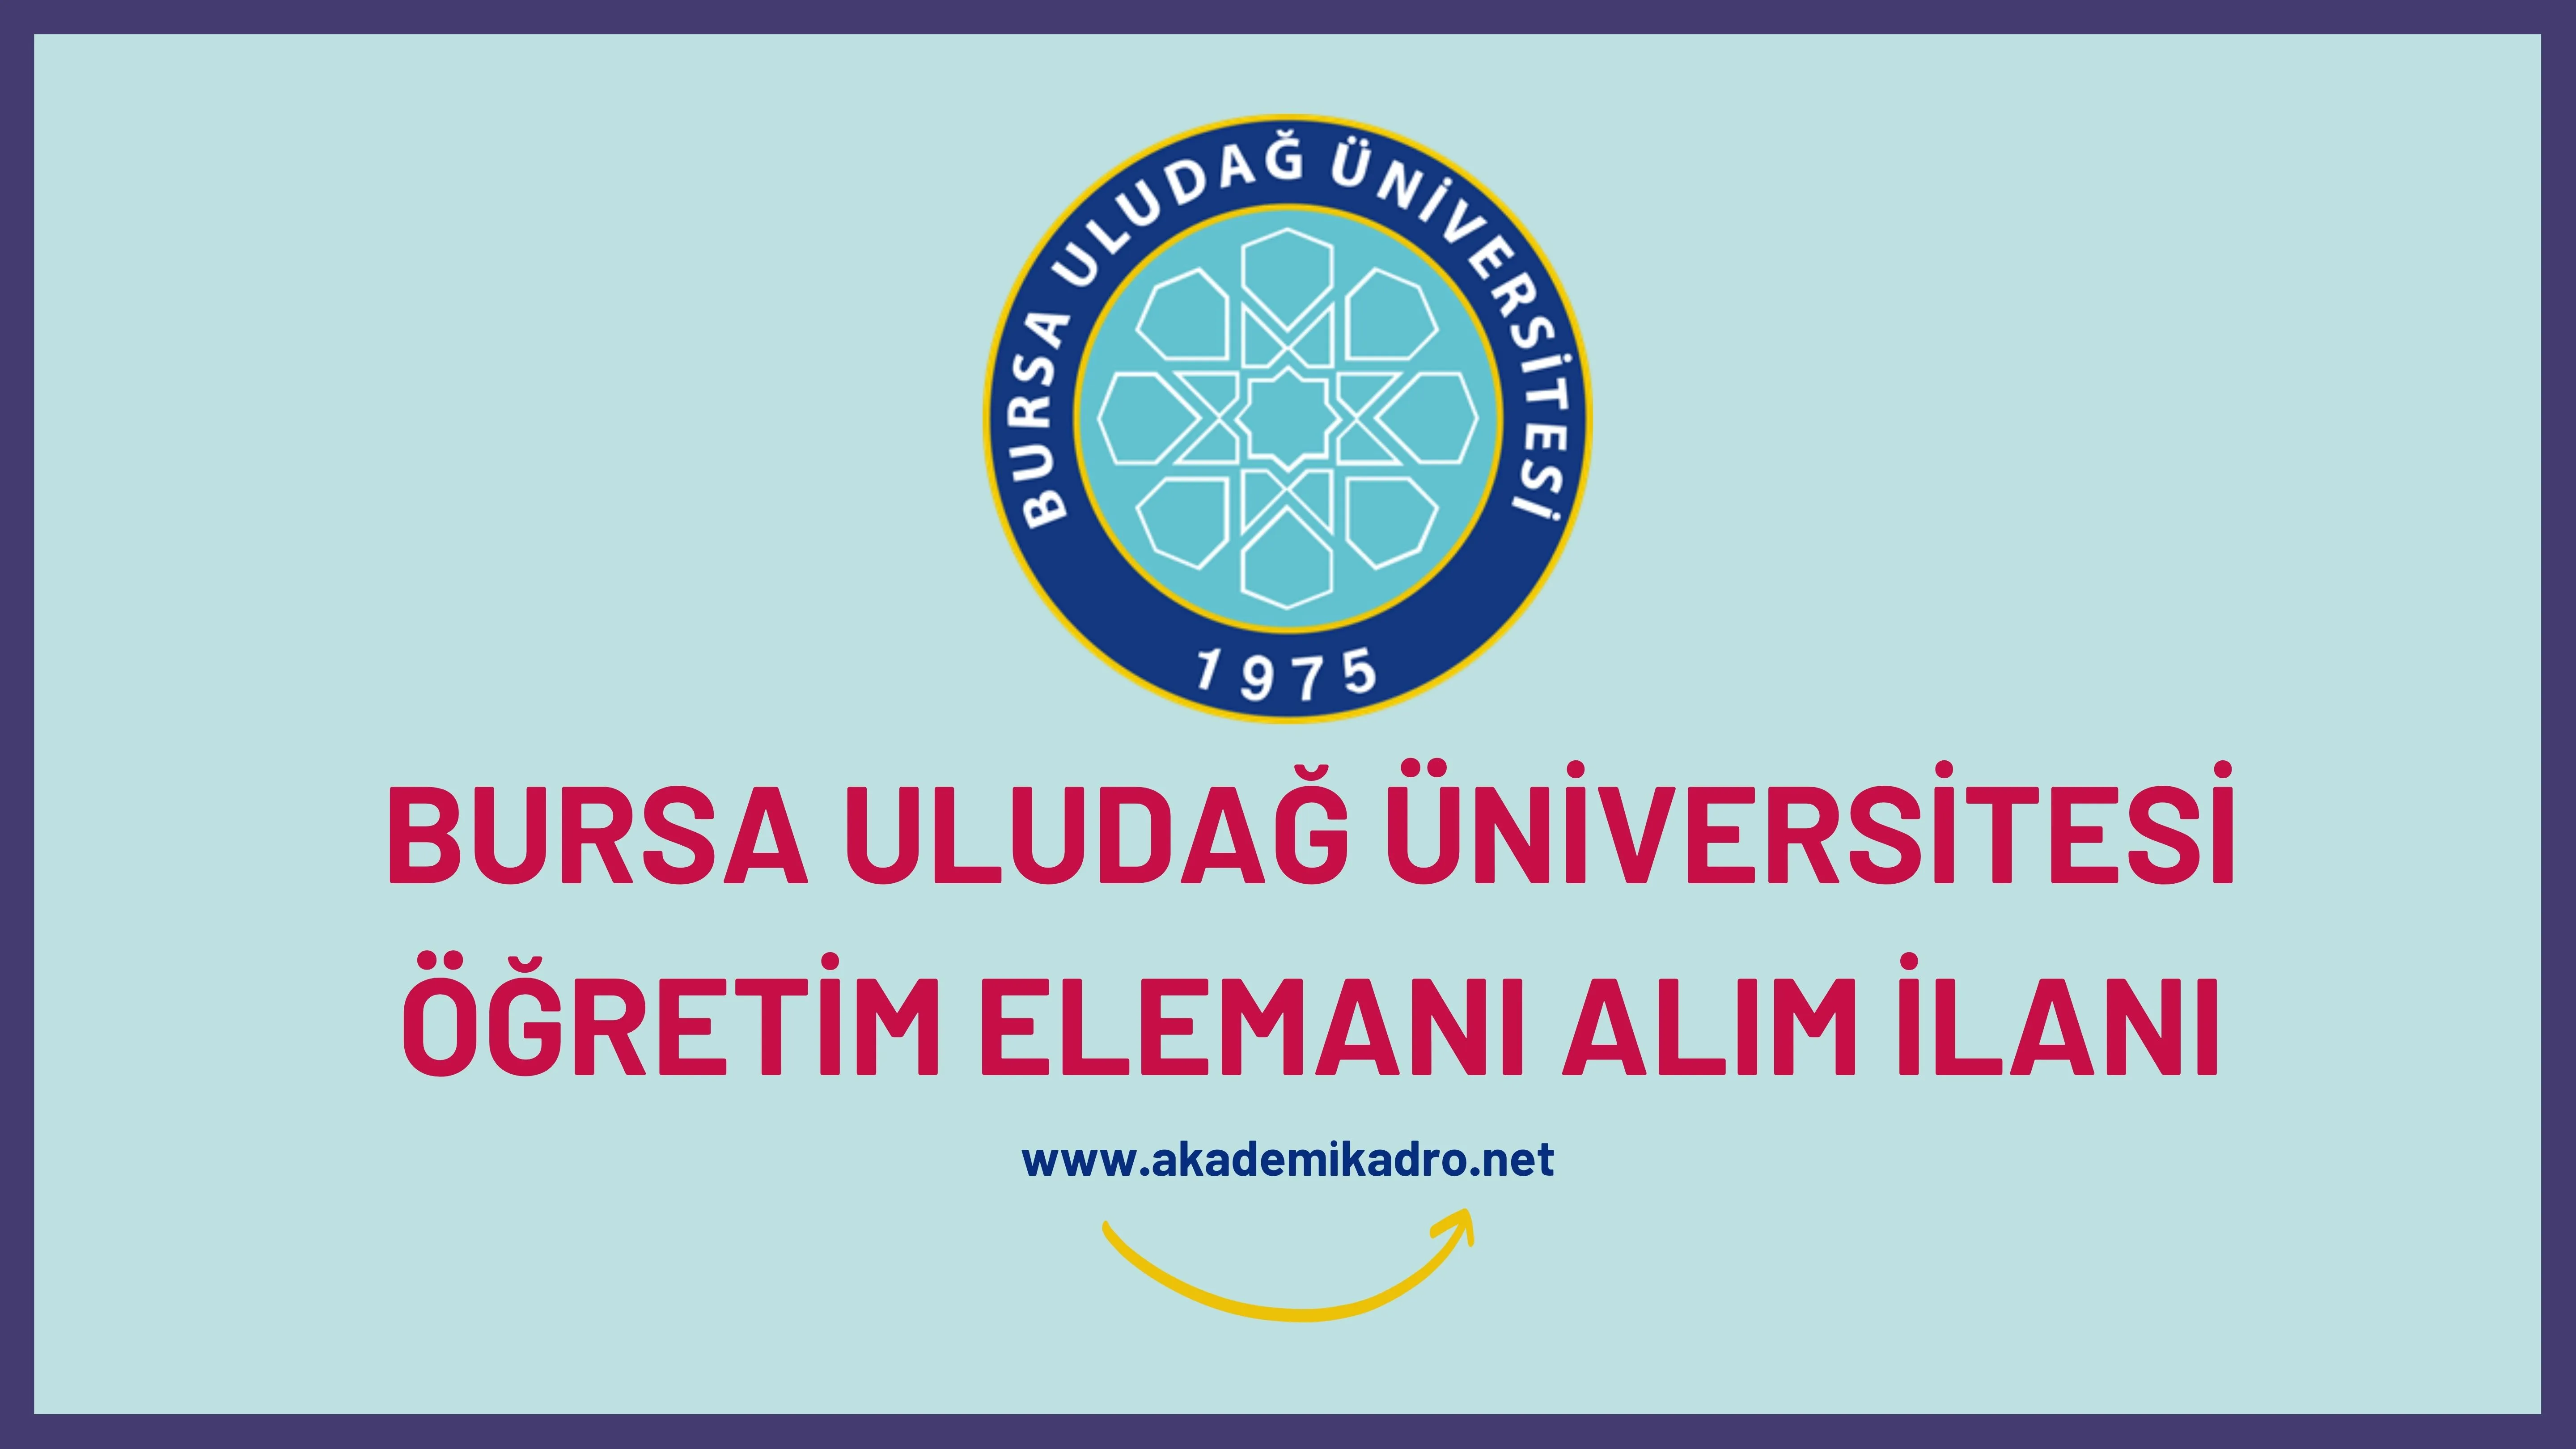 Bursa Uludağ Üniversitesi 38 öğretim üyesi ve 28 Araştırma görevlisi alacaktır.